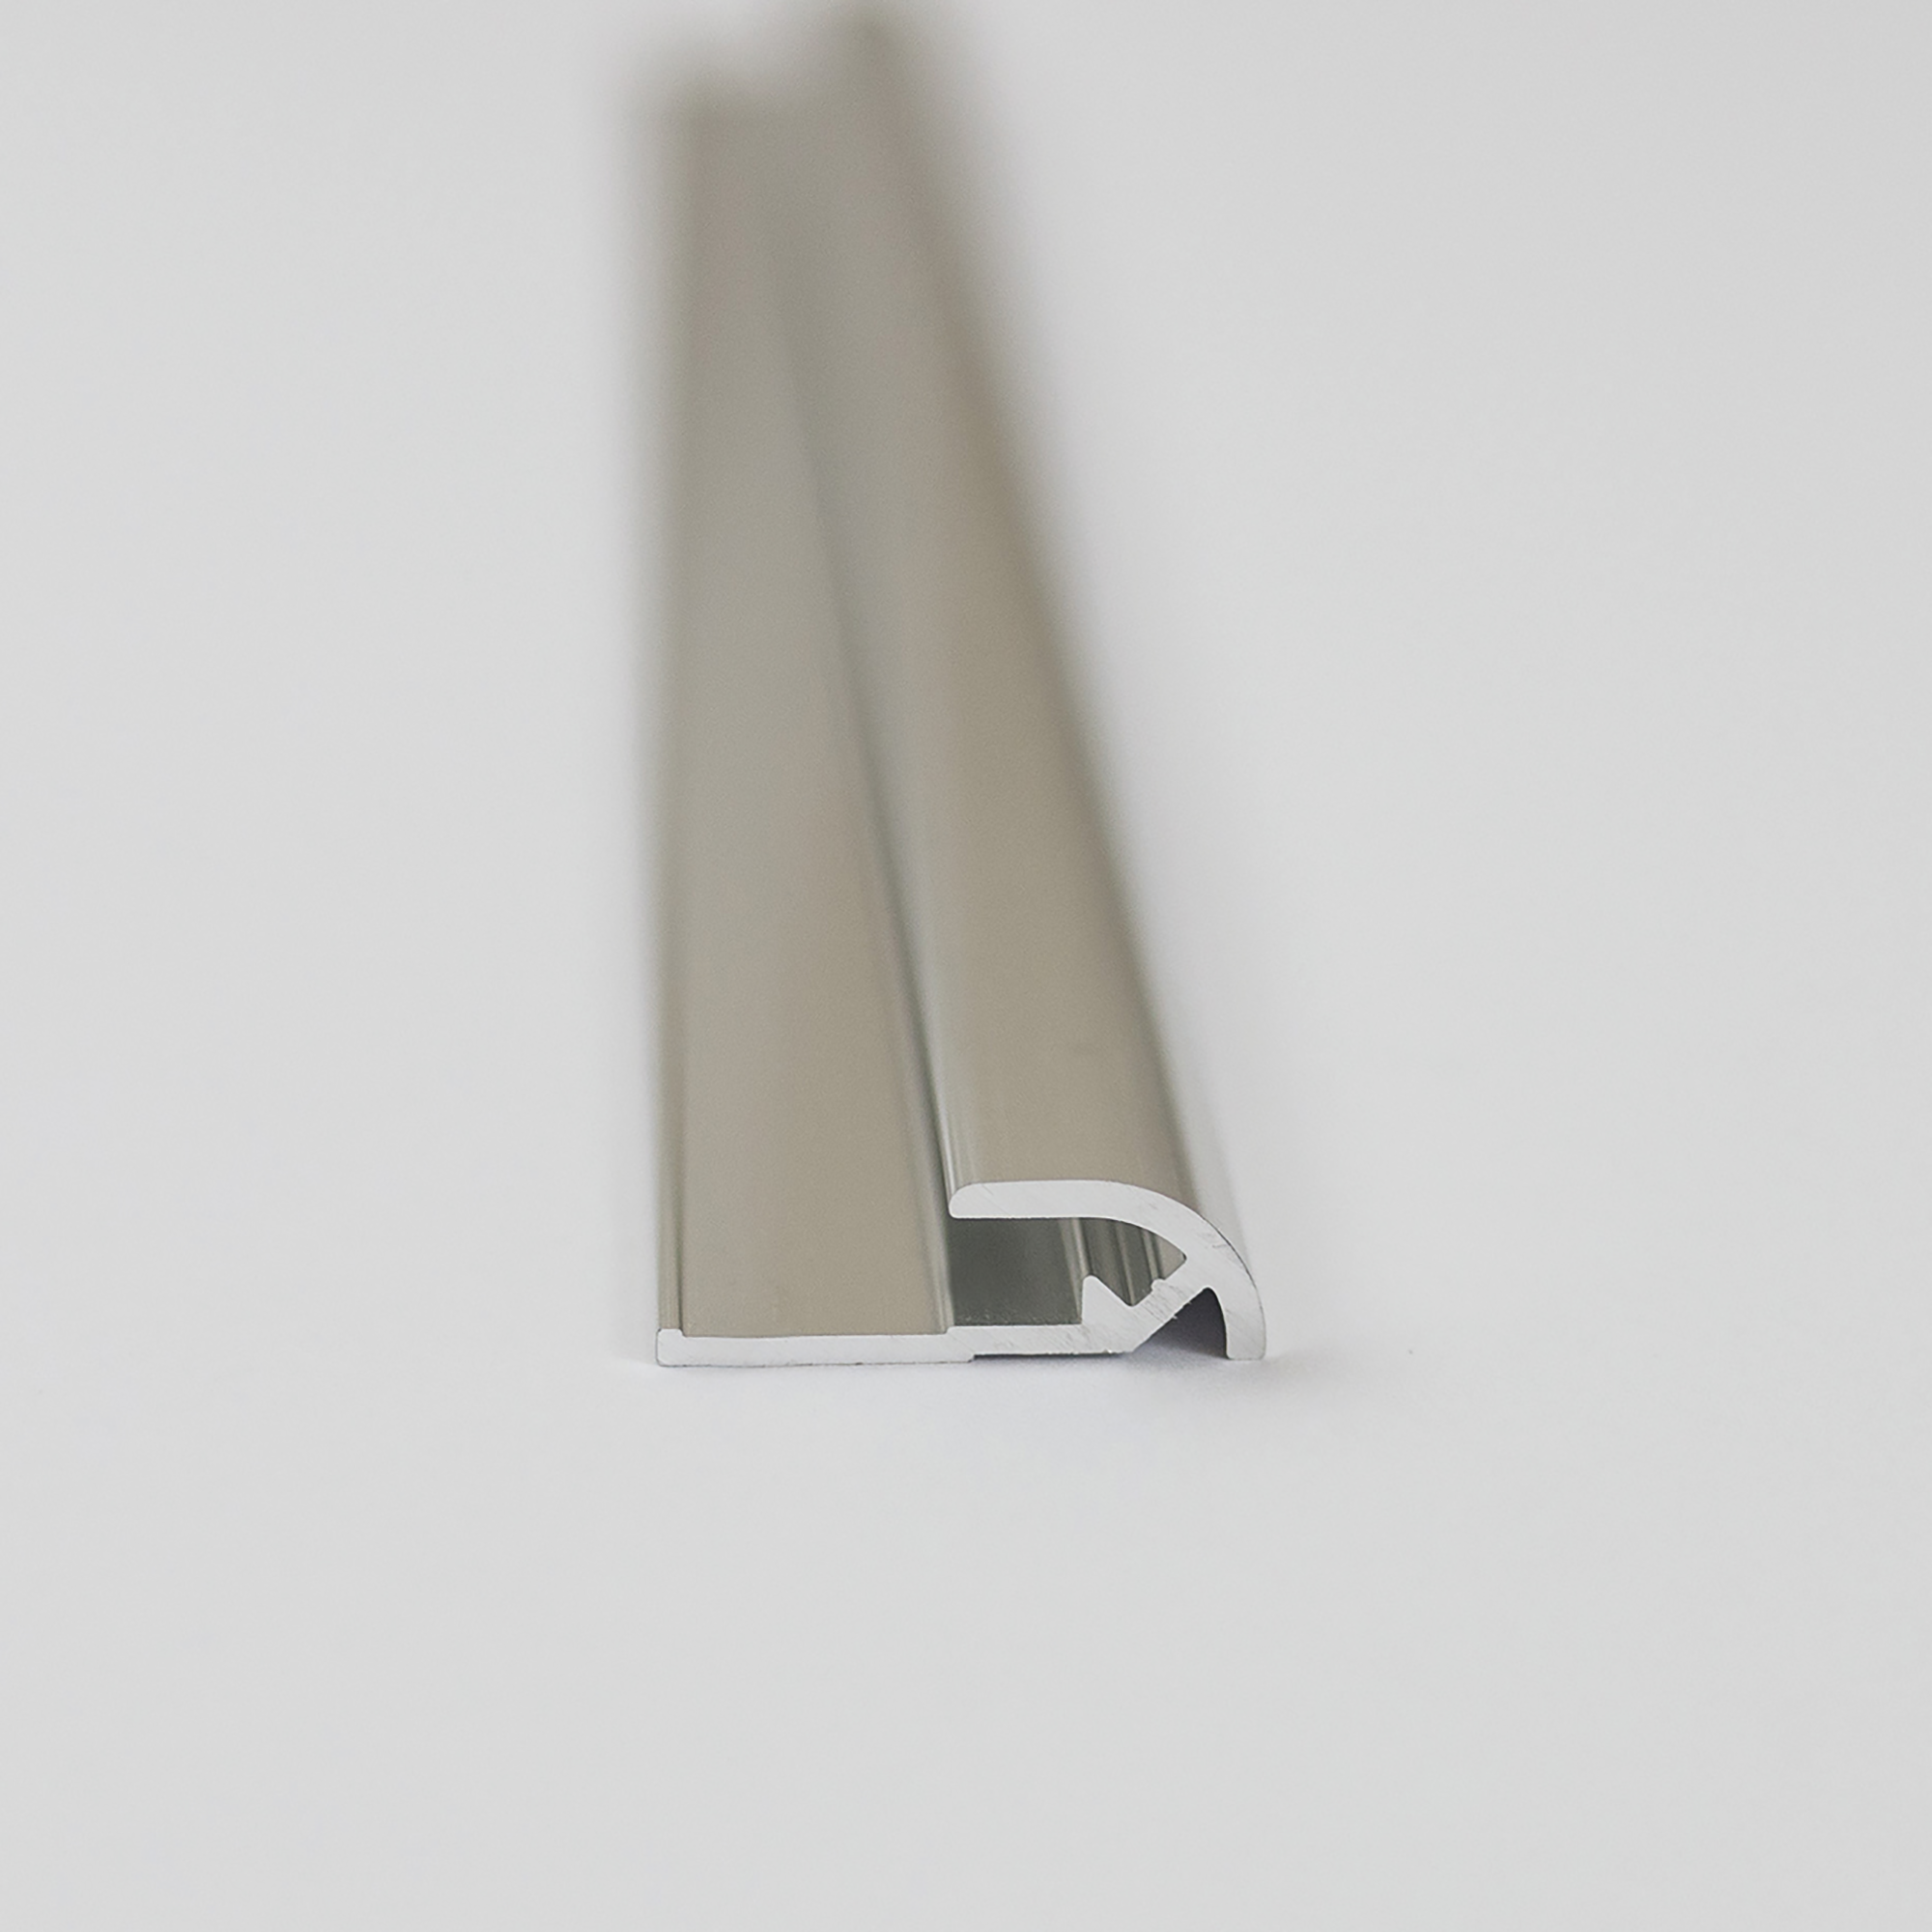 Abschlussprofil für Rückwandplatten, rund, alu chromeffekt, 2550 mm + product picture